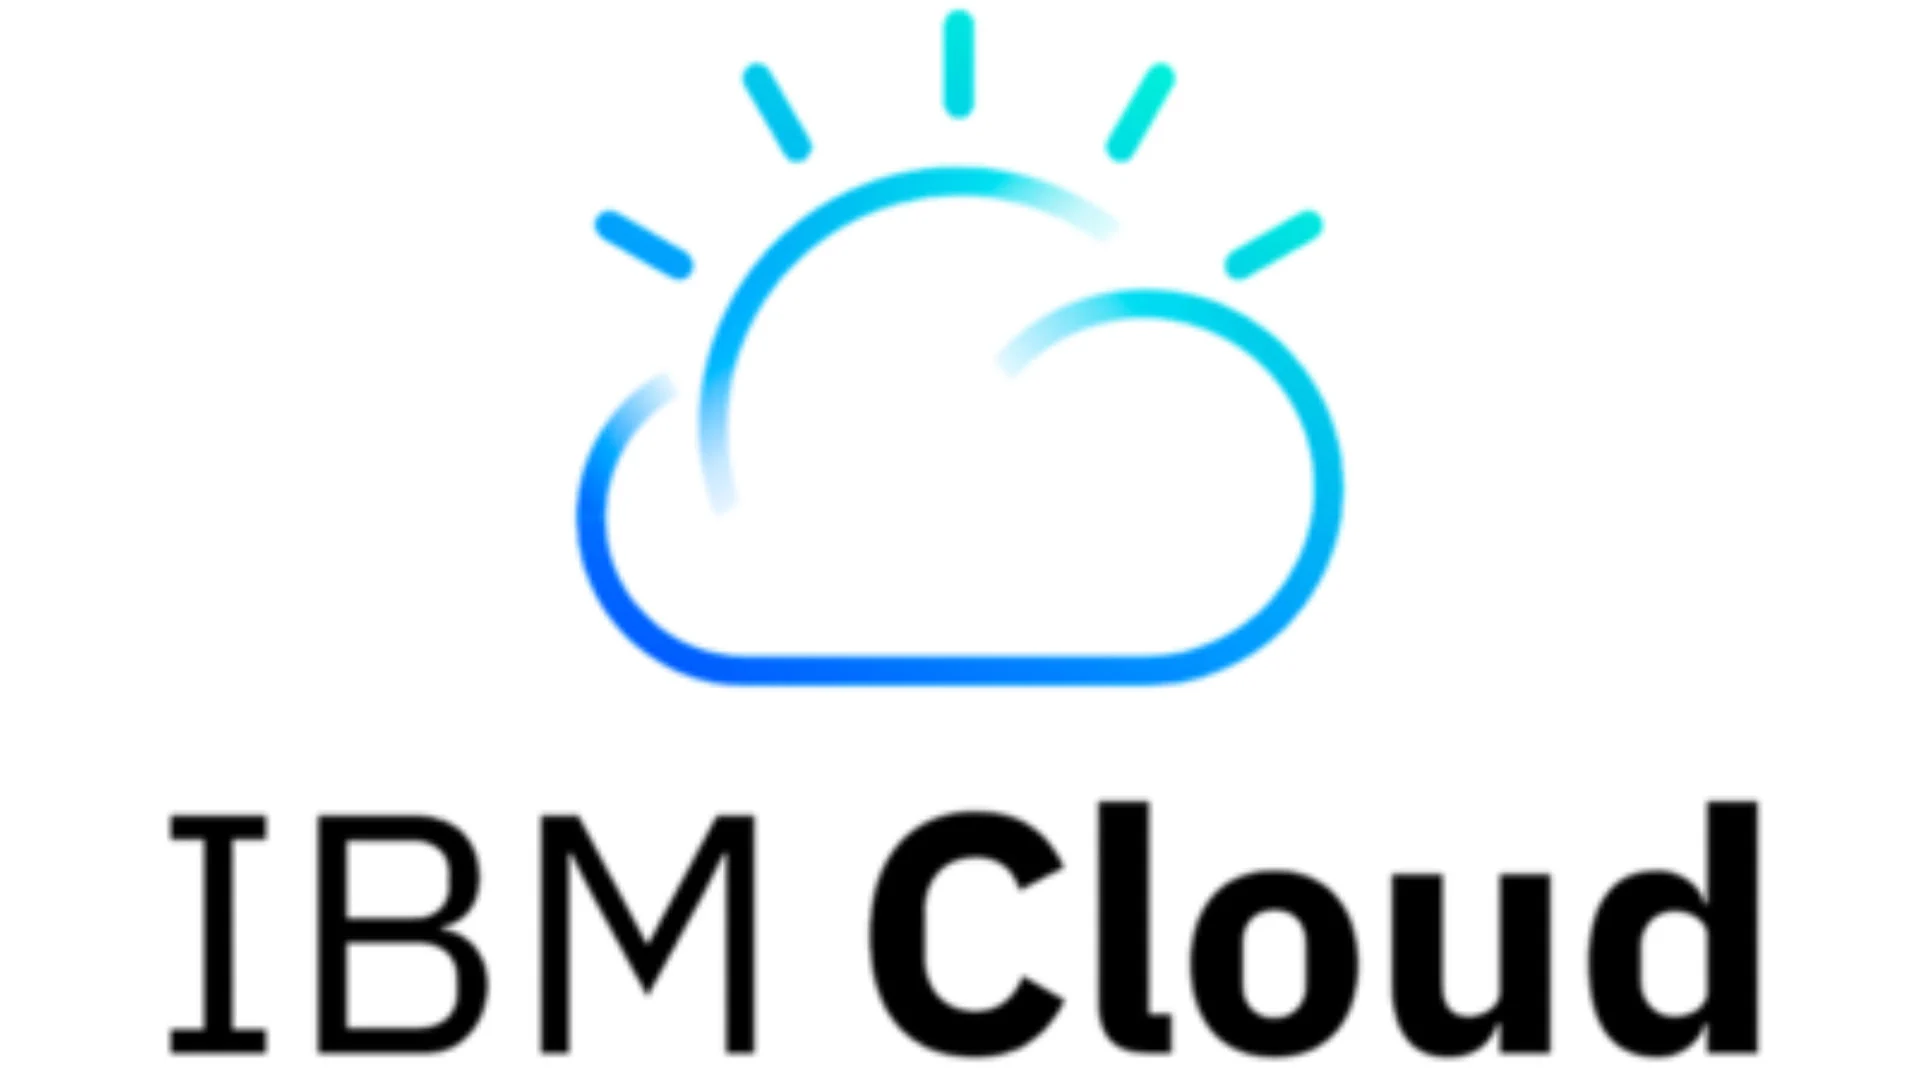 csm_ibm_cloud_ec85f56ad1